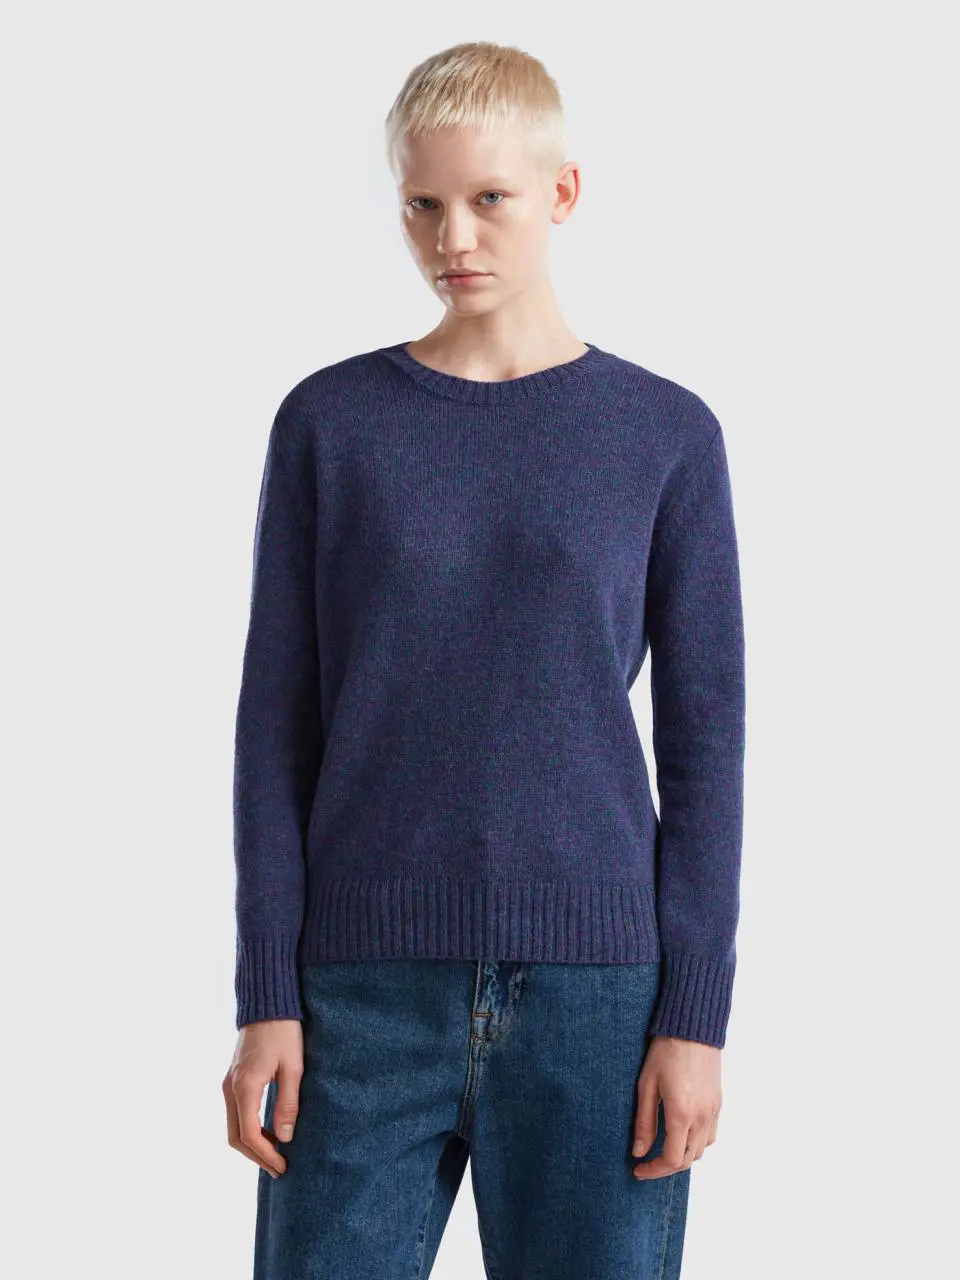 Benetton sweater in pure shetland wool. 1